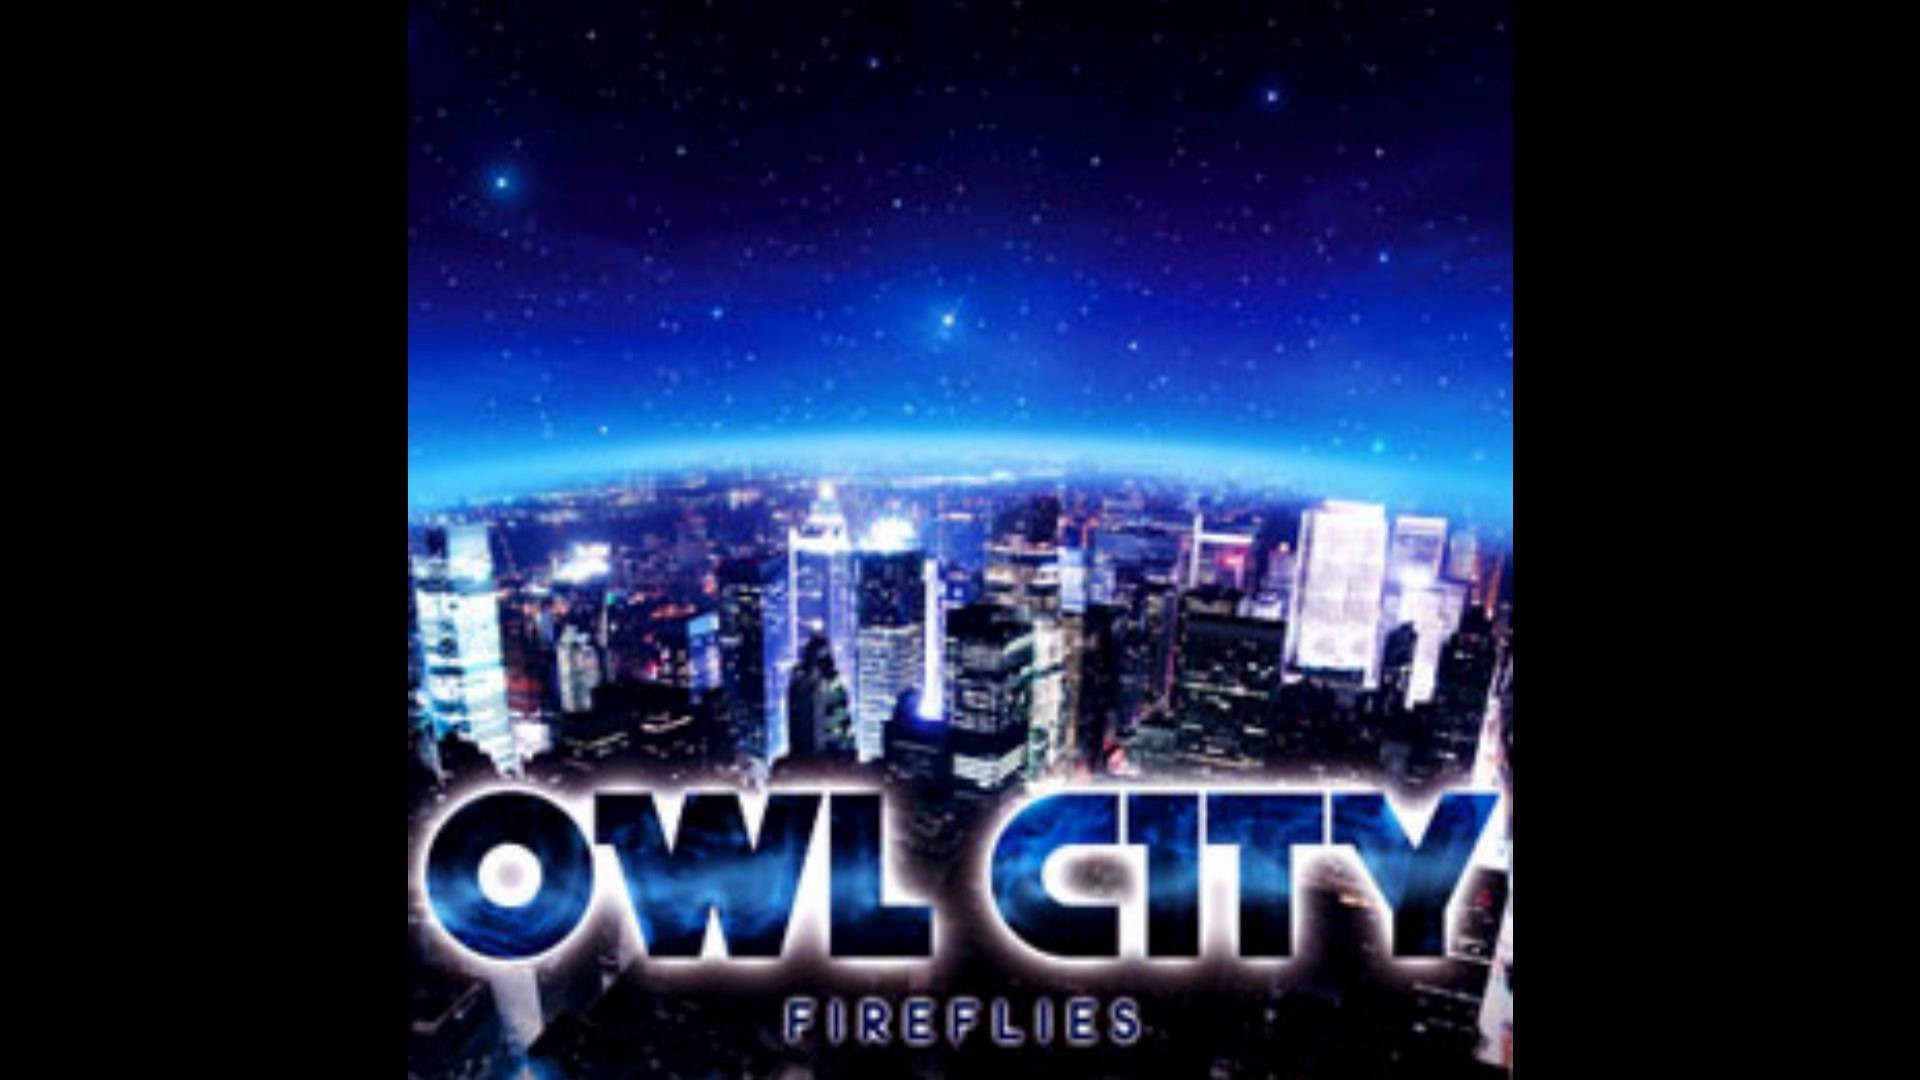 1920x1080 Owl City Album Wallpaper Owl City Fireflies 8-bit